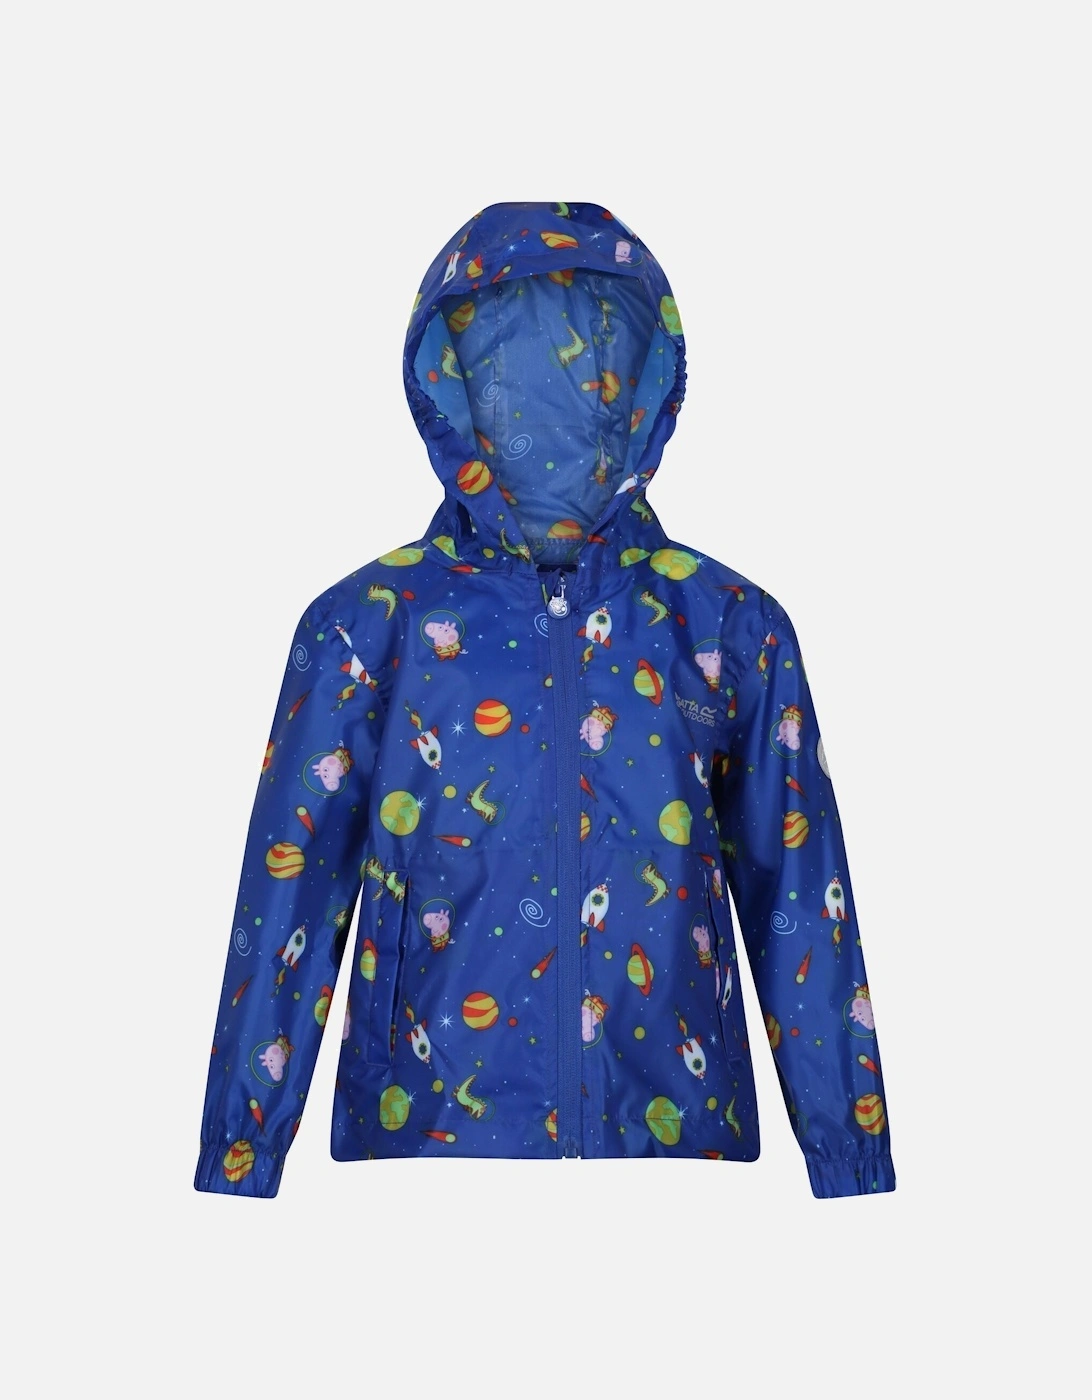 Childrens/Kids Peppa Pig Cosmic Packaway Raincoat, 6 of 5